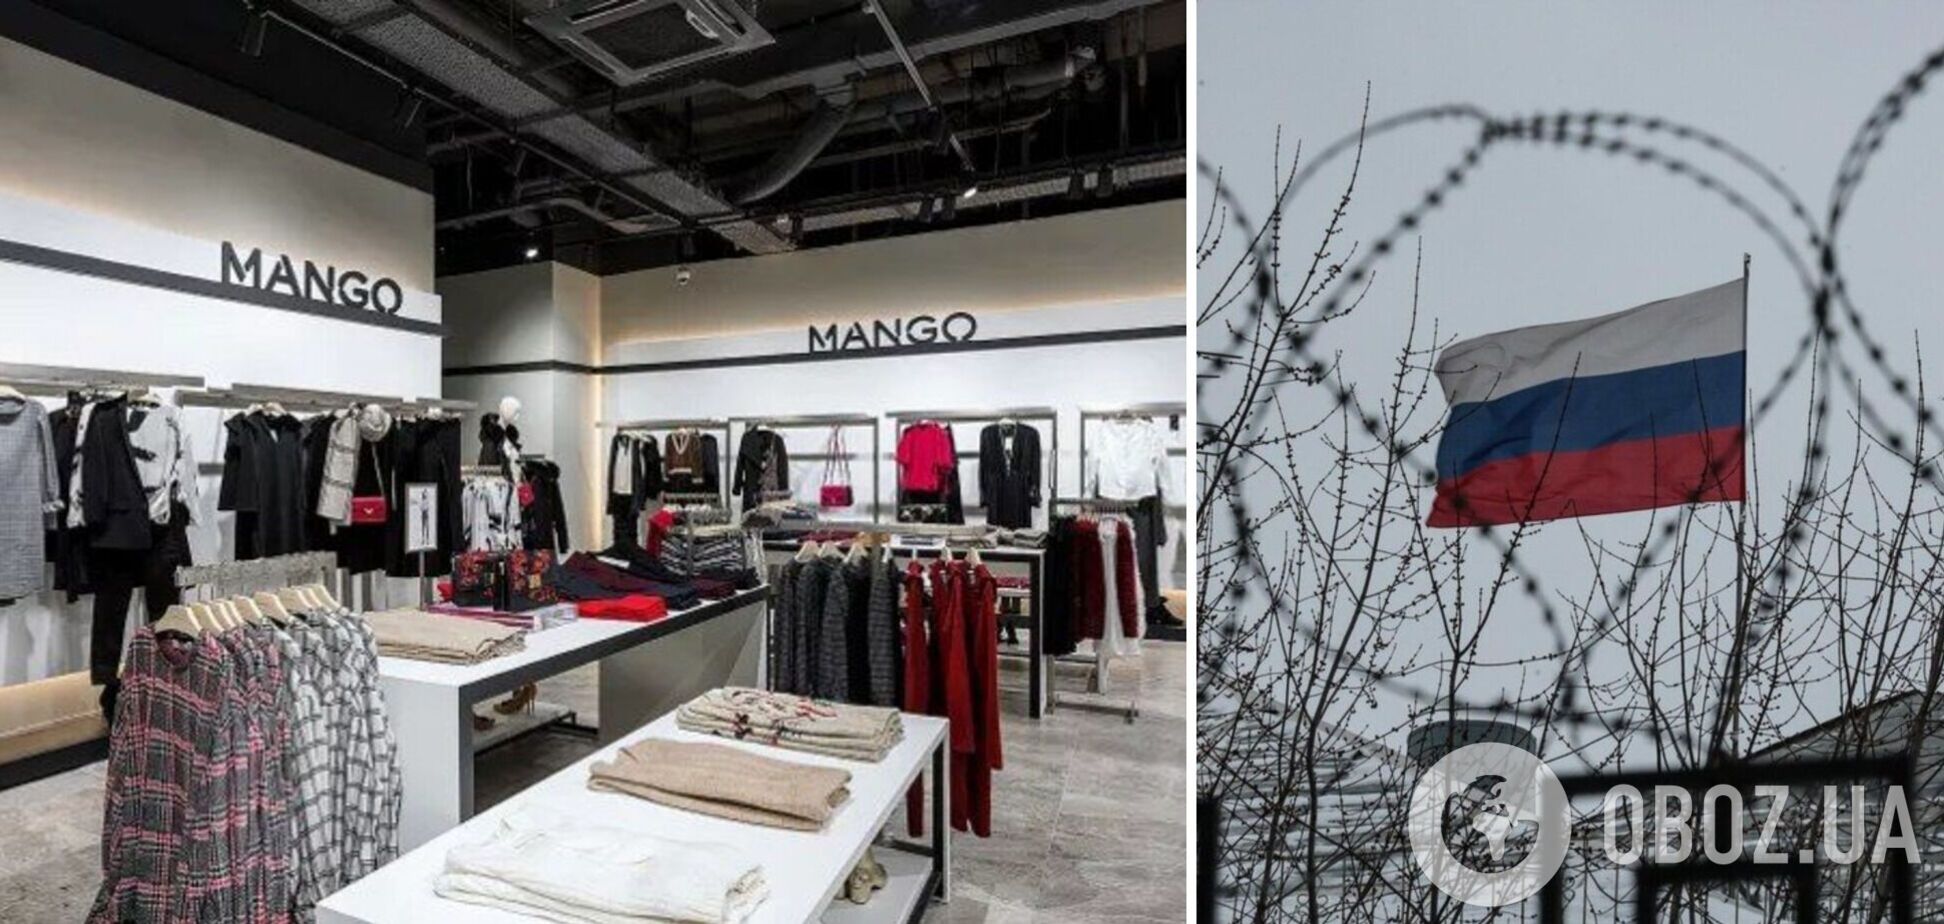 Компания Mango уходит из России 